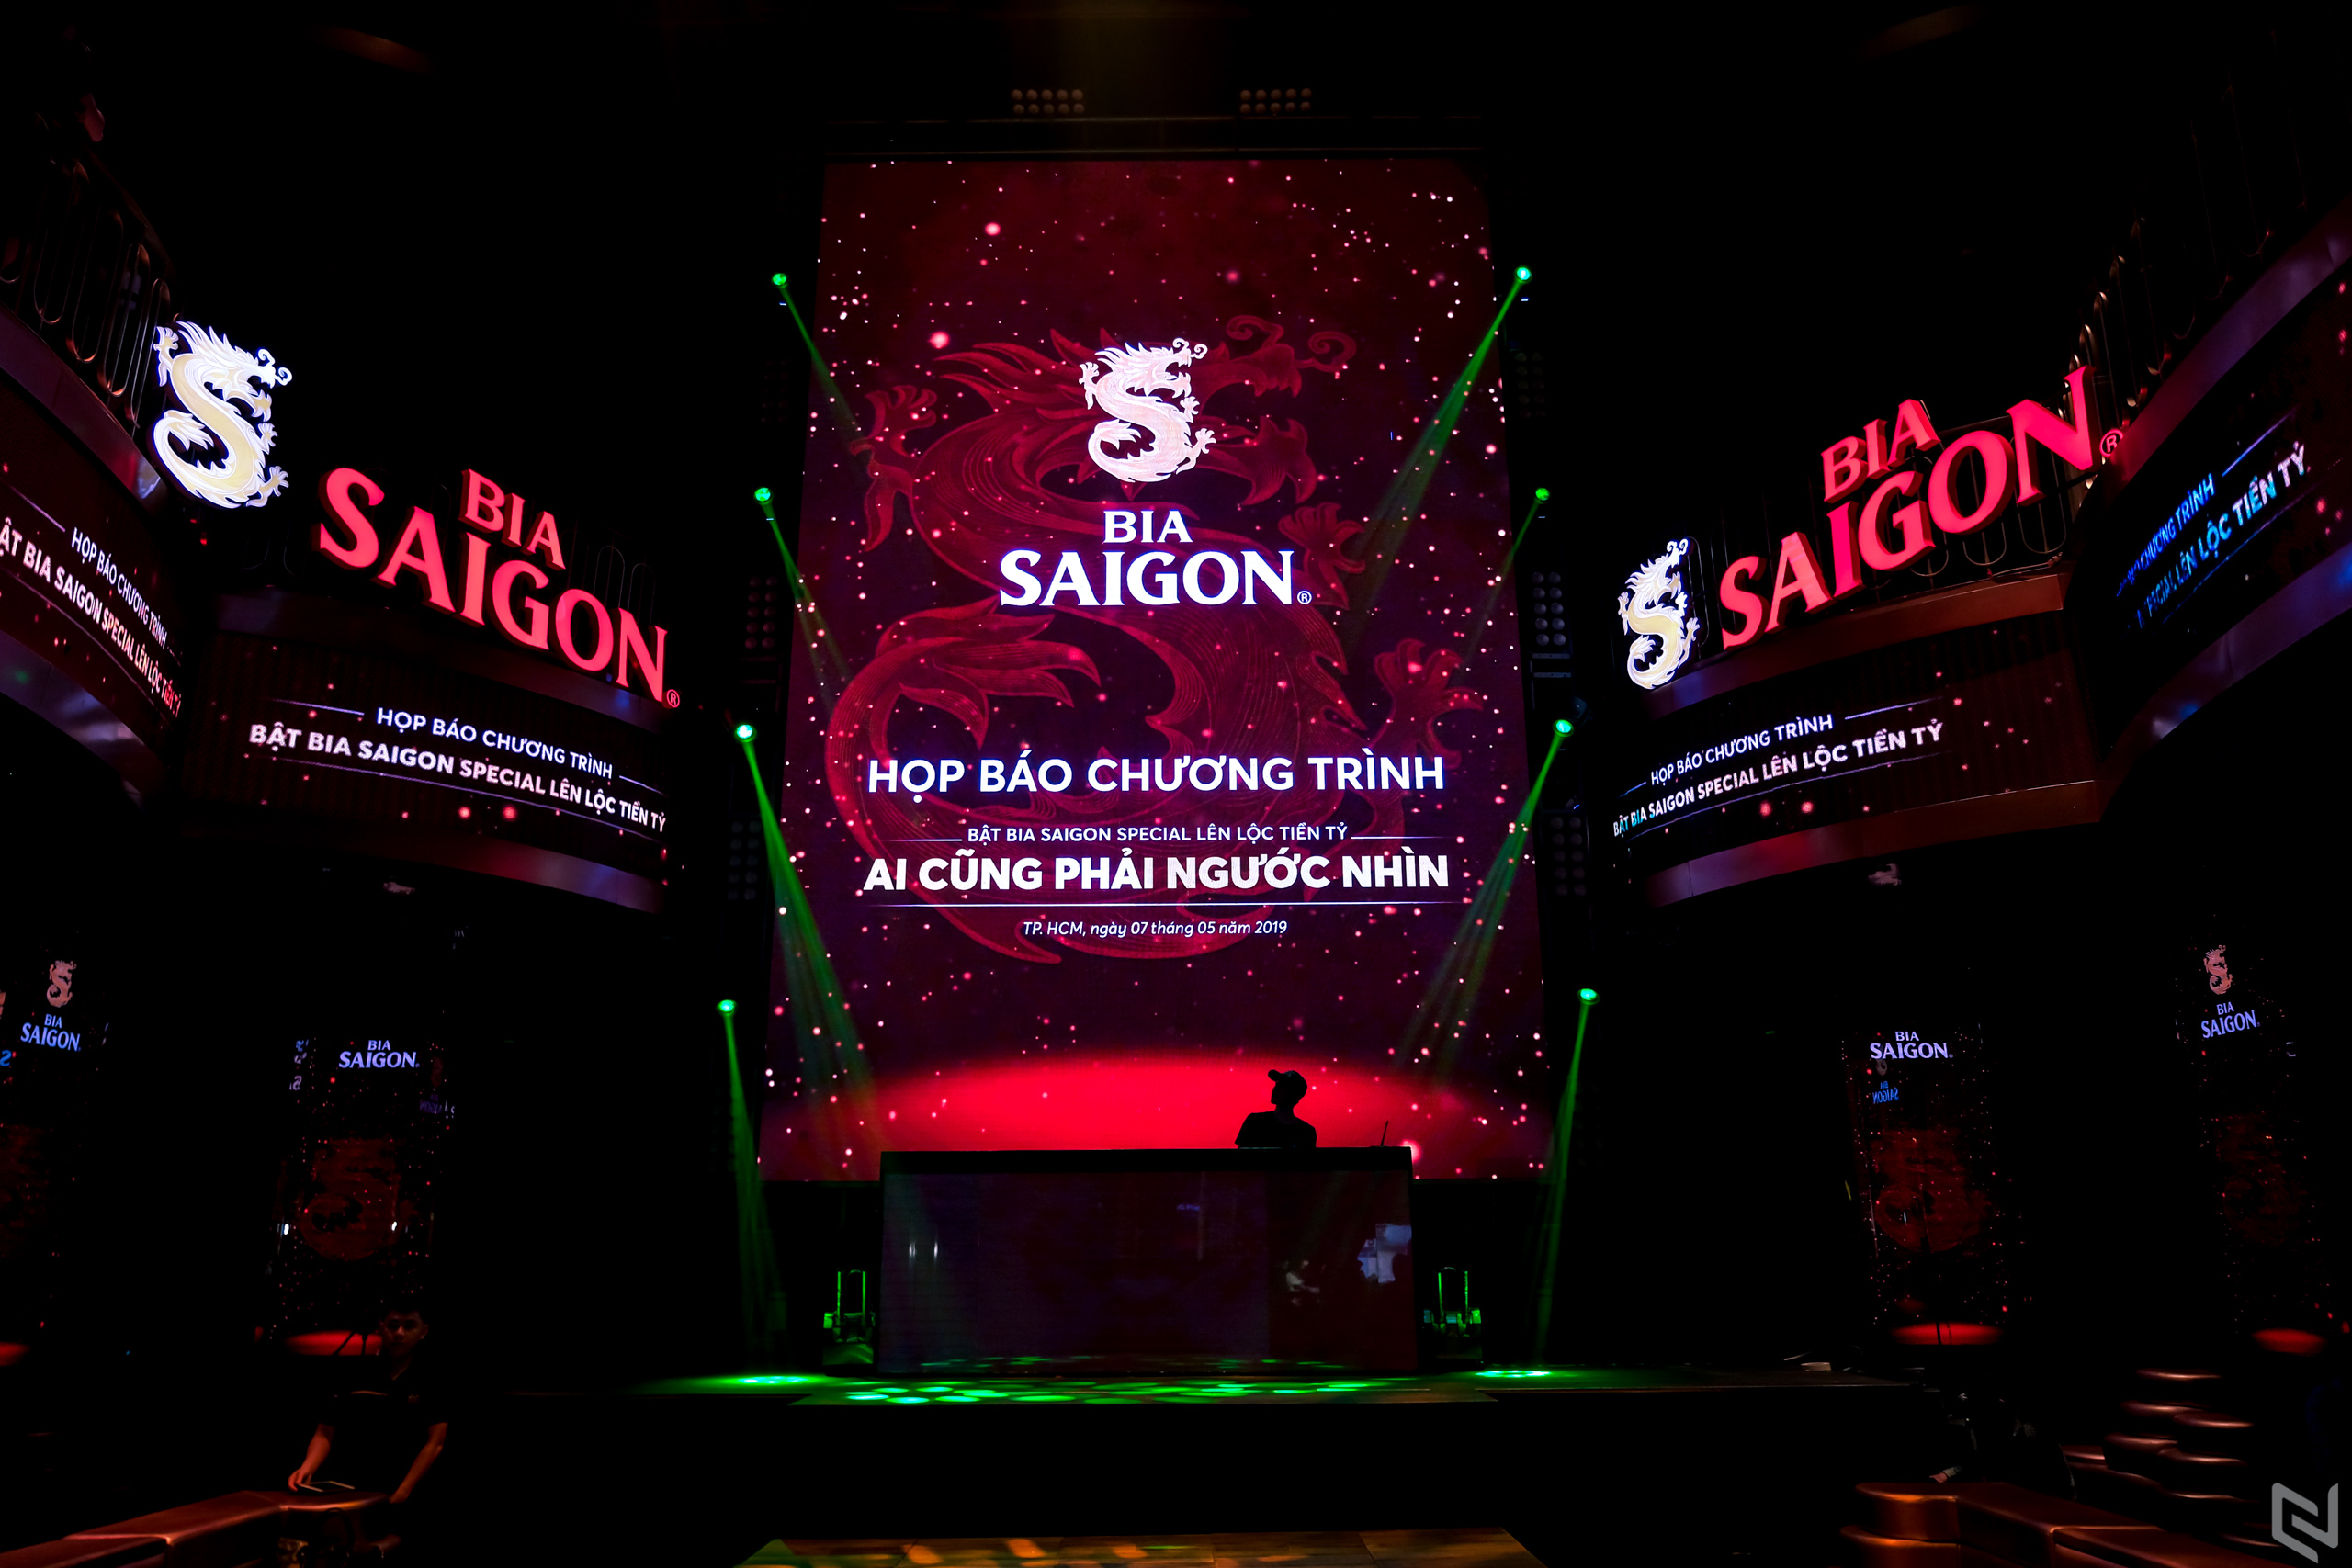 Sabeco công bố chương trình khuyến mãi “Bật bia Saigon Special lên lộc tiền tỷ”